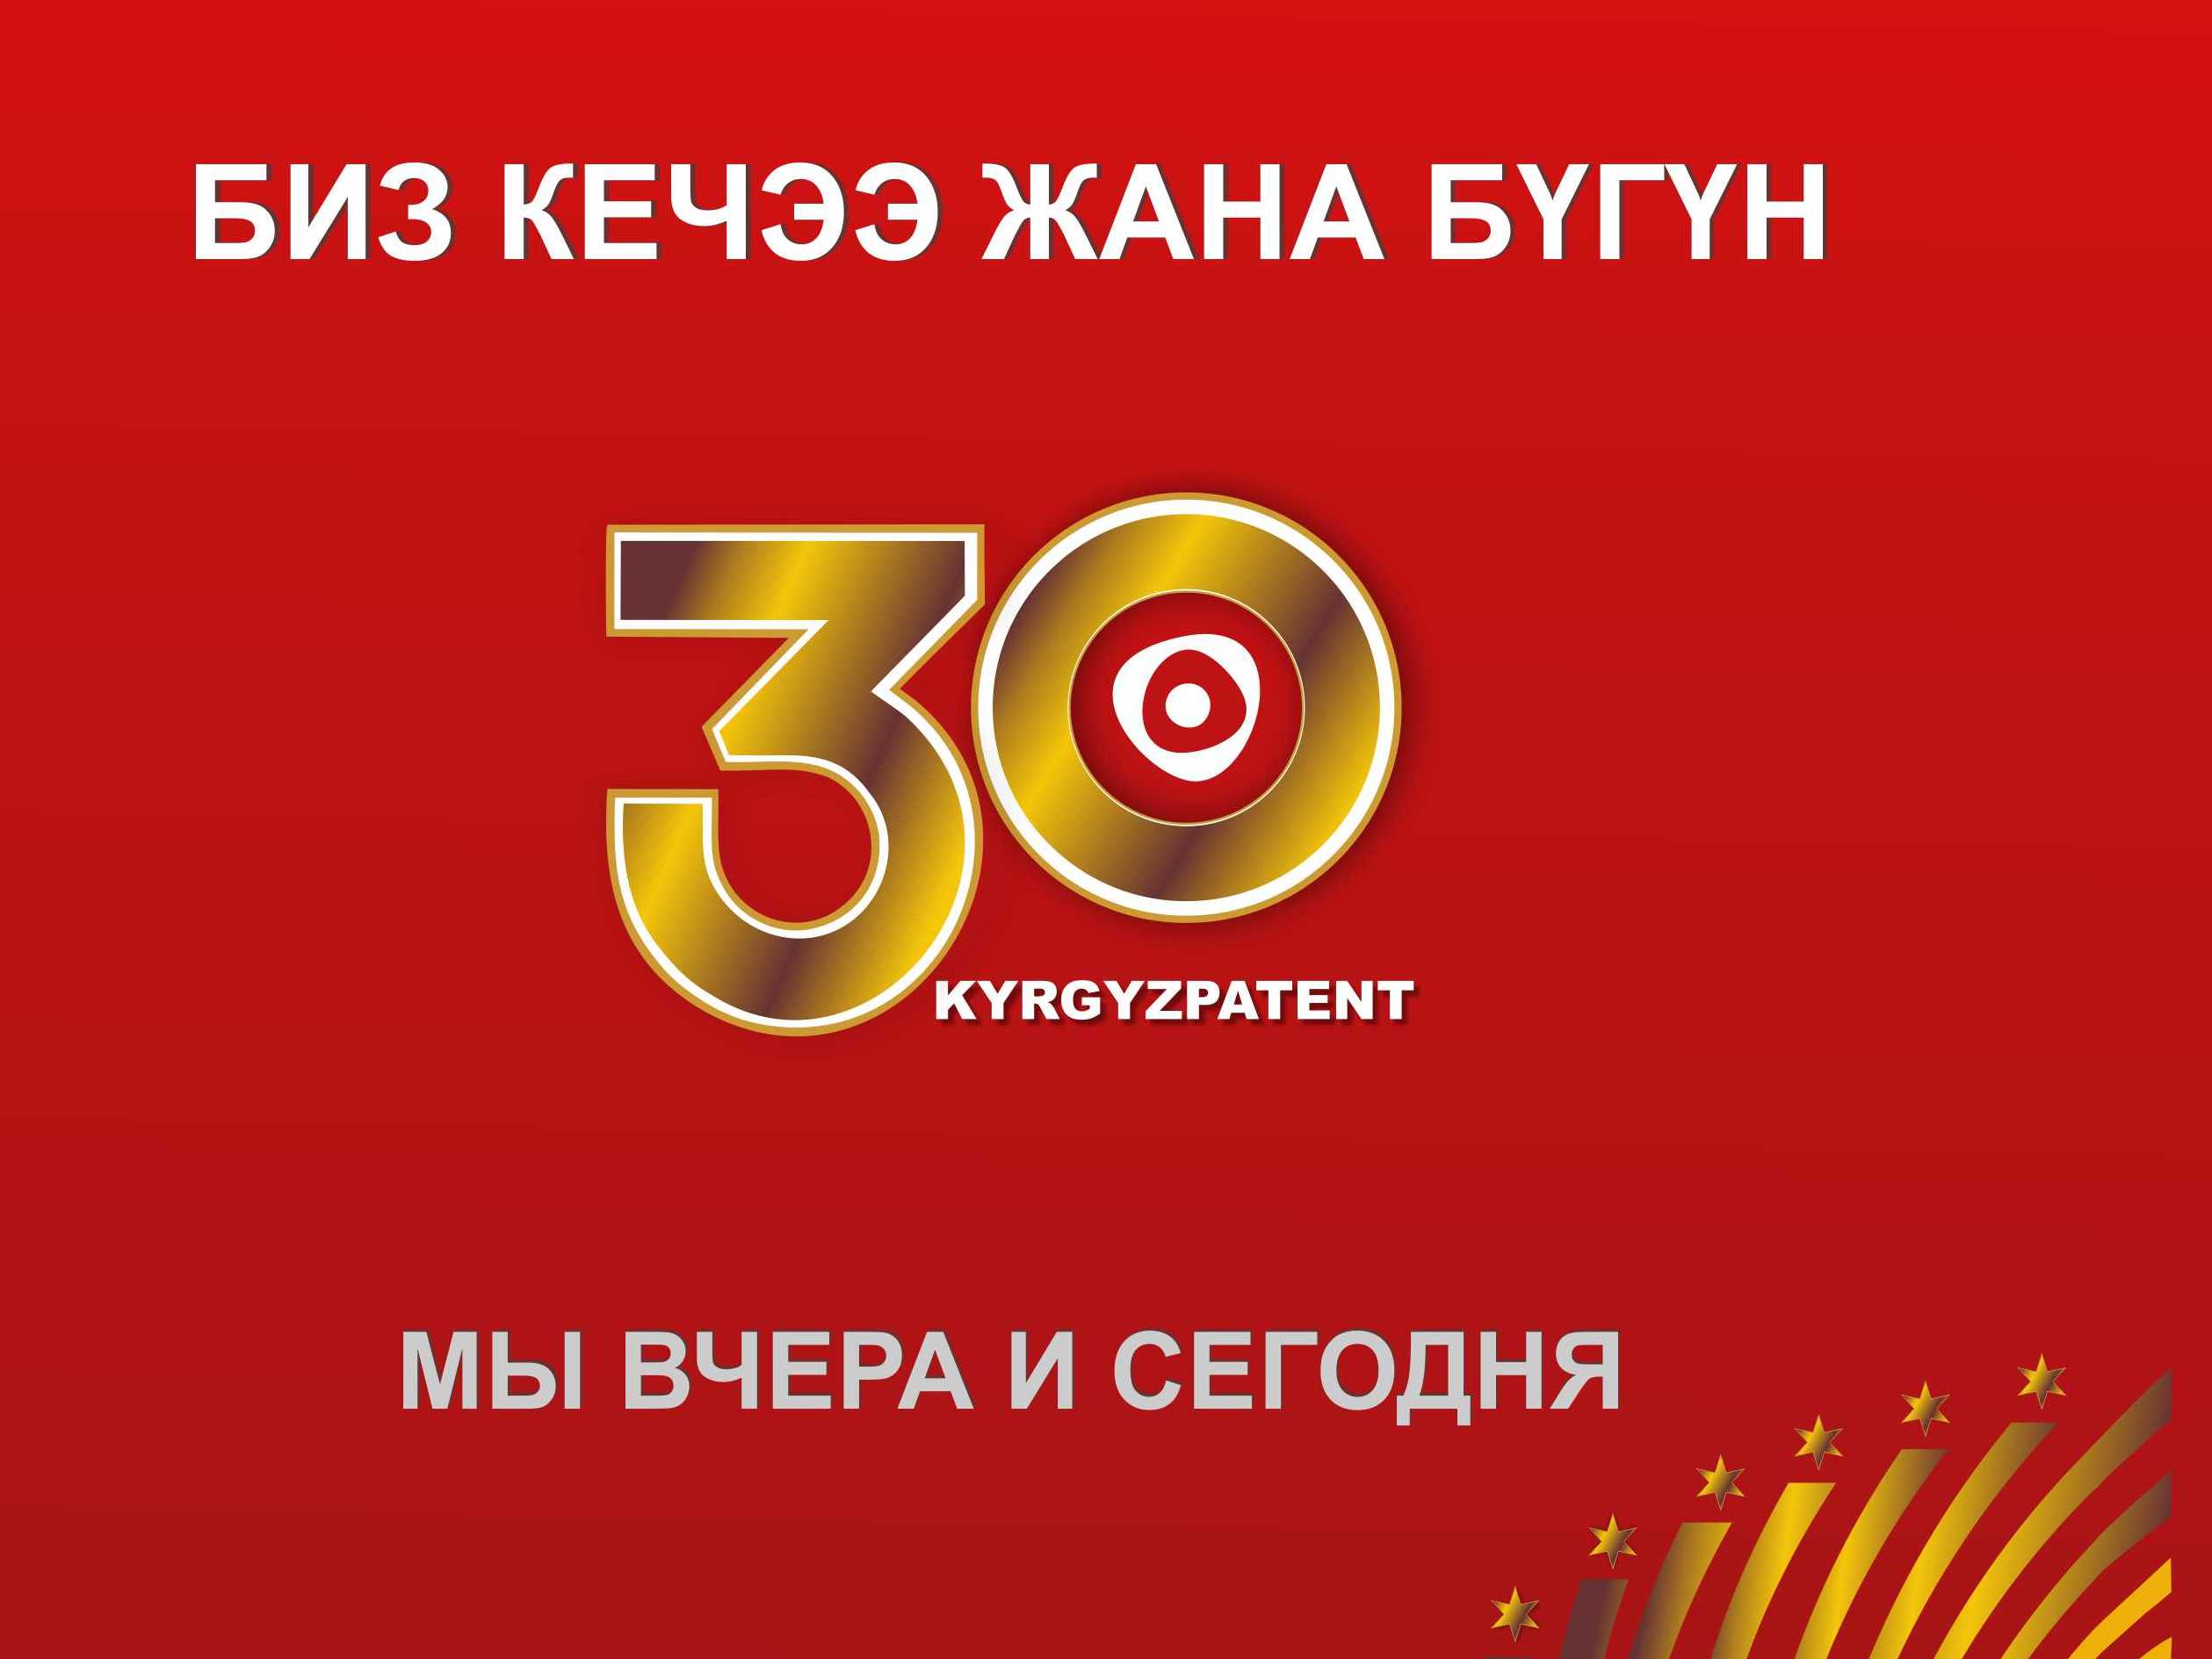 «Мы вчера и сегодня: Кыргызпатенту 30 лет» — книга в честь юбилея национальной патентной системы